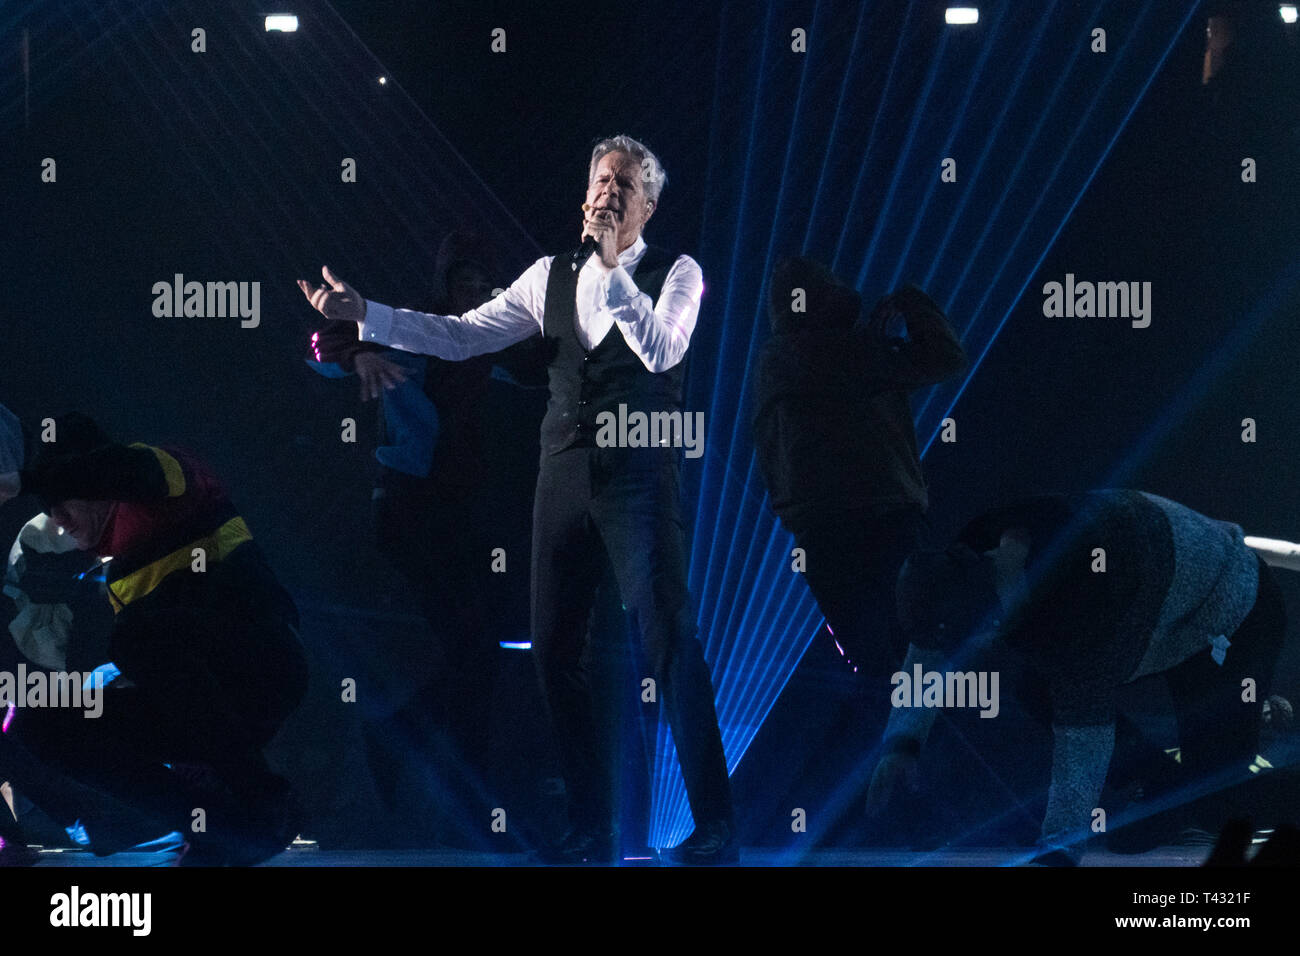 Milan, Italie. Le 12 avril 2019. Claudio Baglioni chante sur scène lors de sa Tournée italienne Banque D'Images